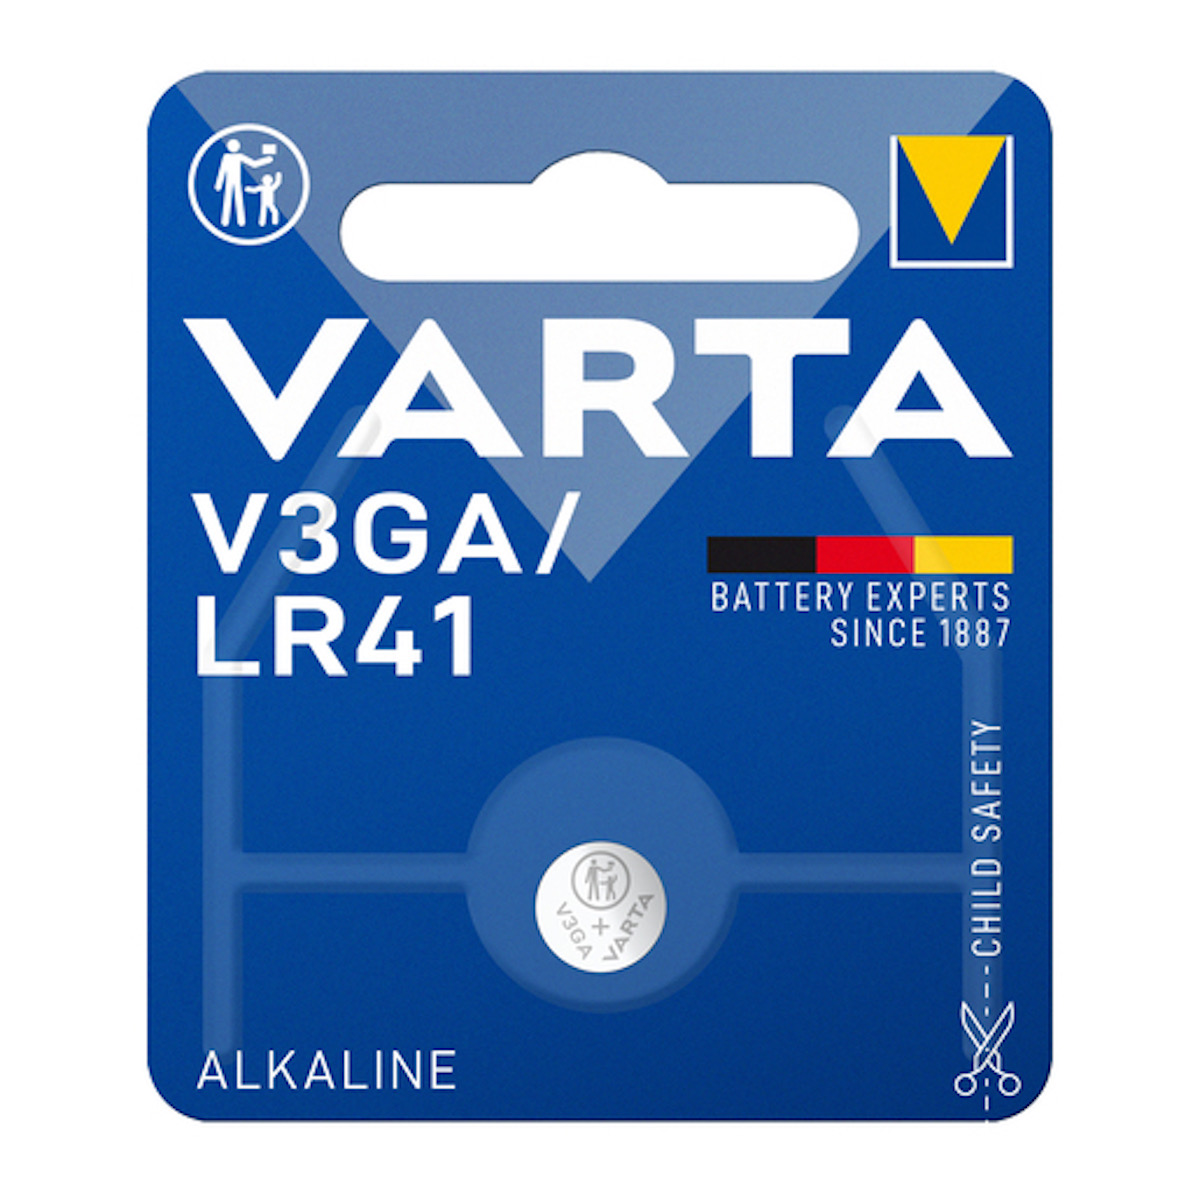 Varta Alkaline Special V3GA/LR41 Batterie